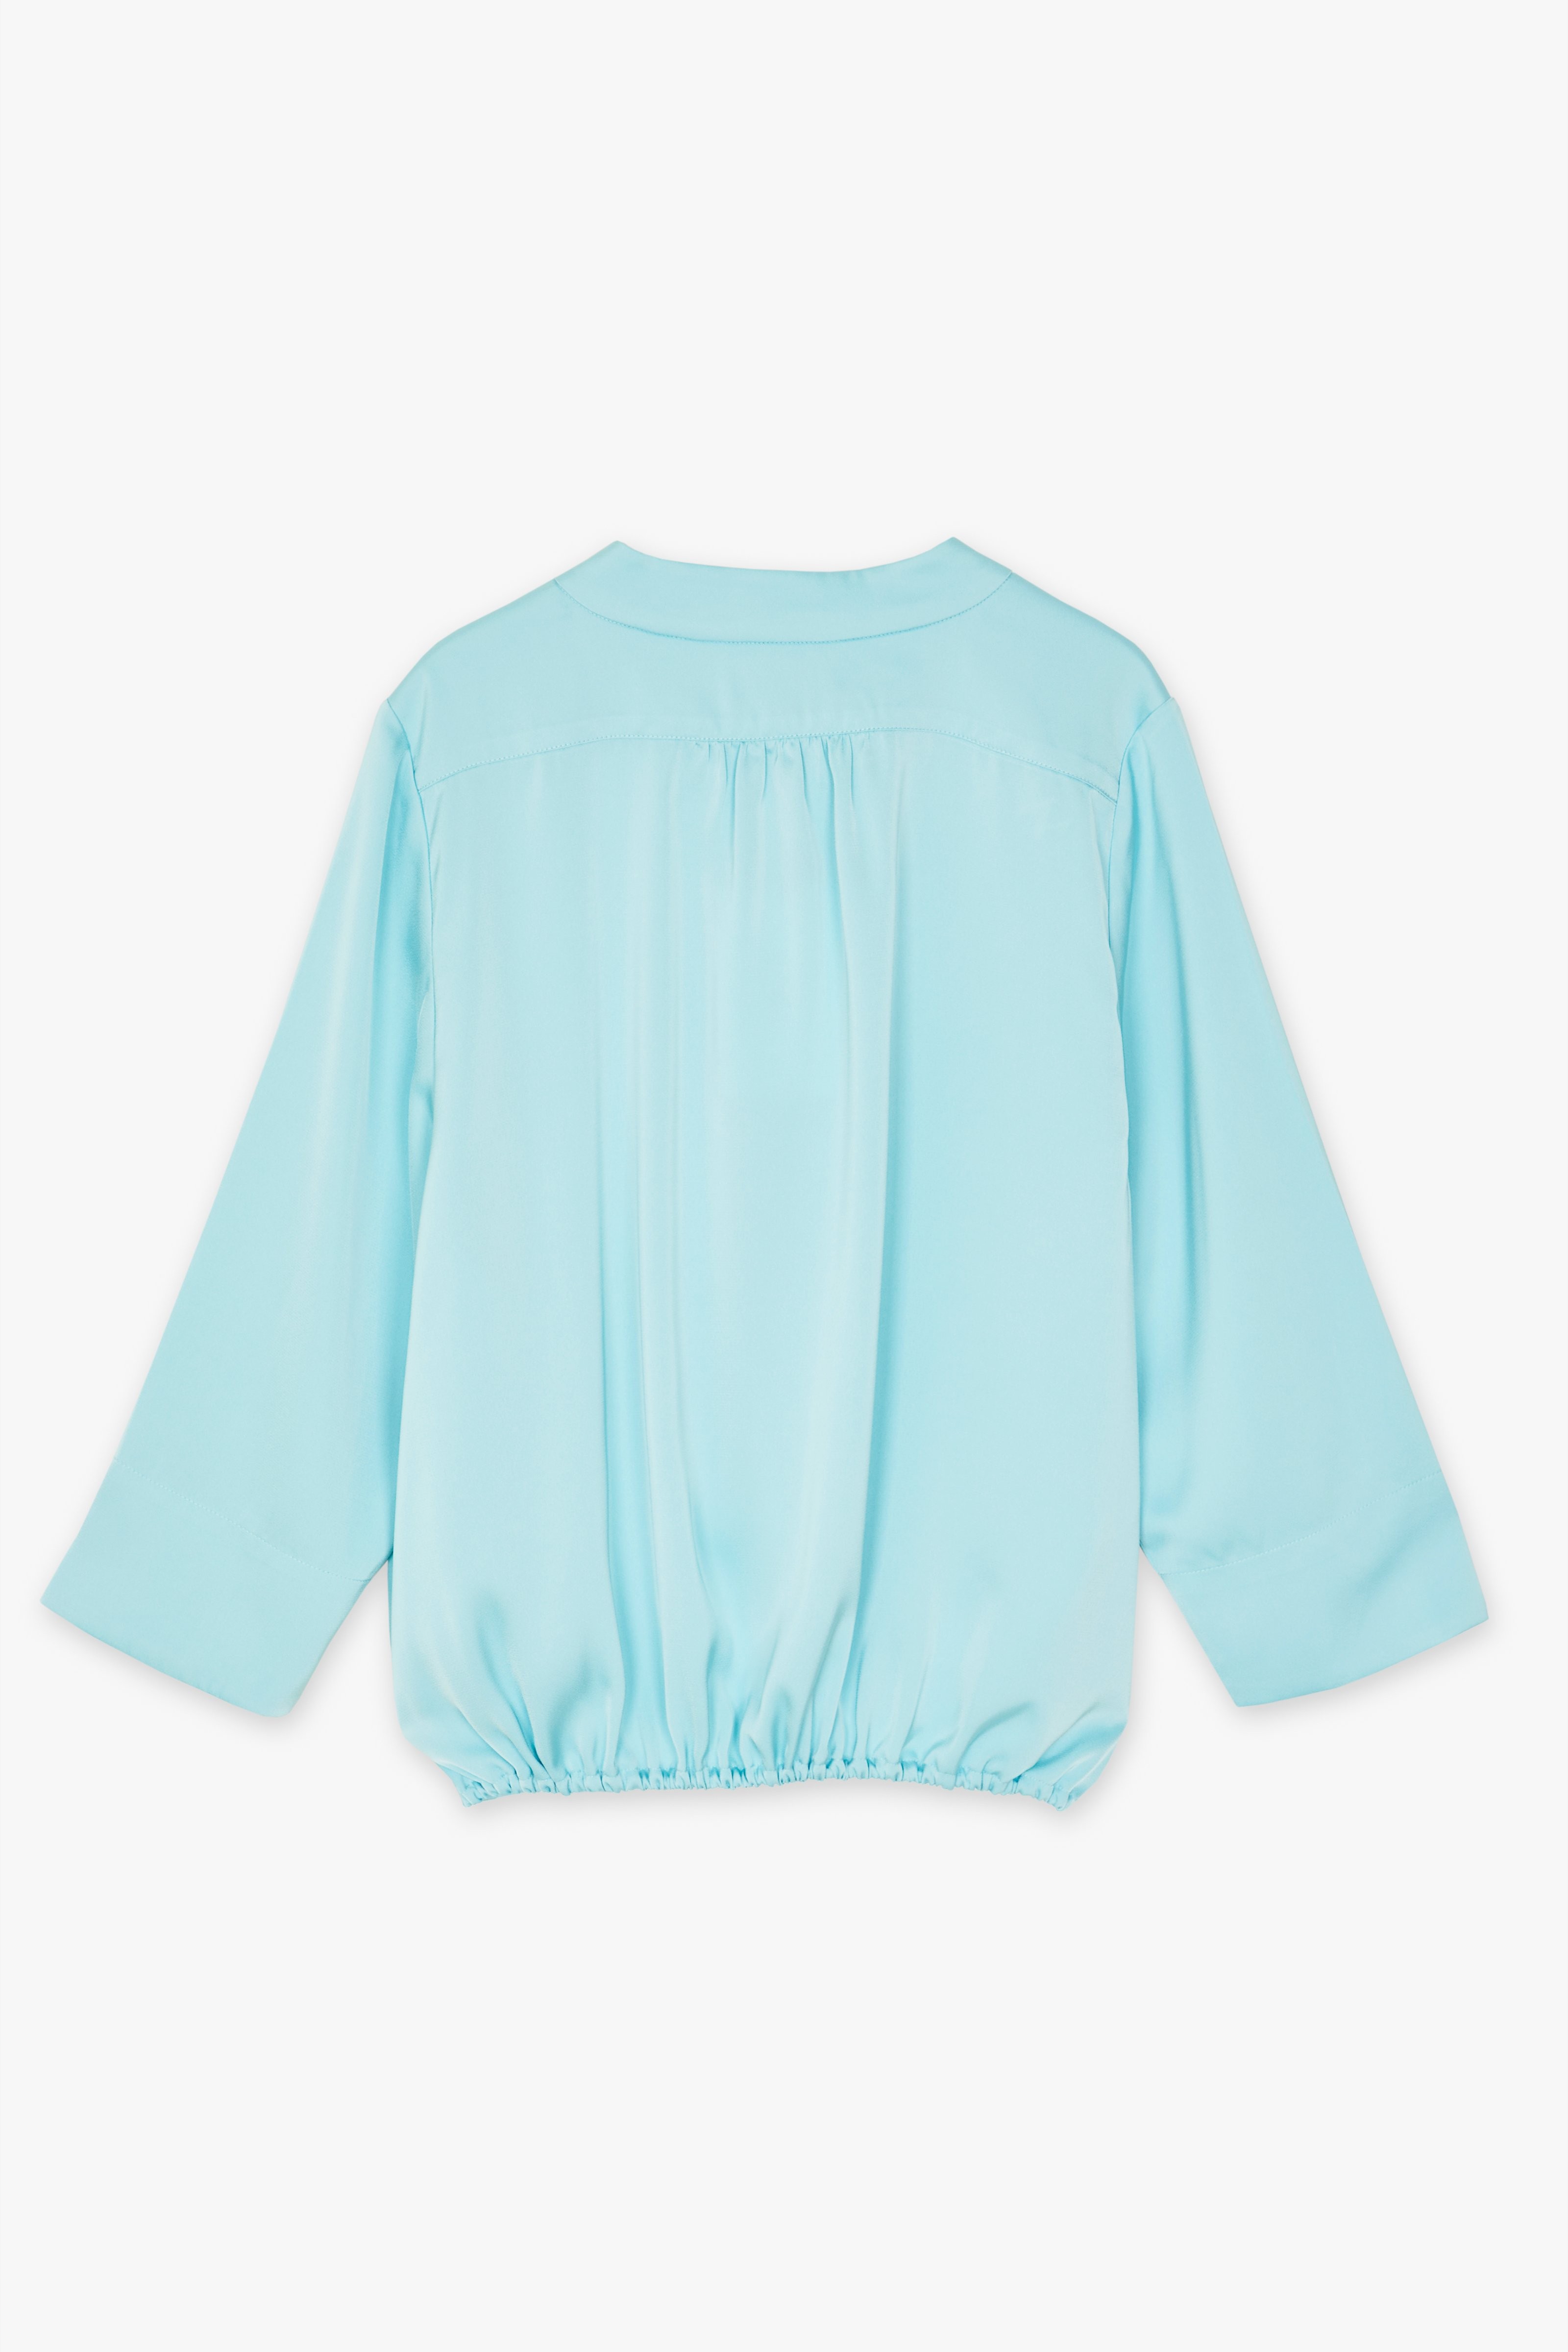 CKS Dames - LAREDO - blouse short sleeves - light blue